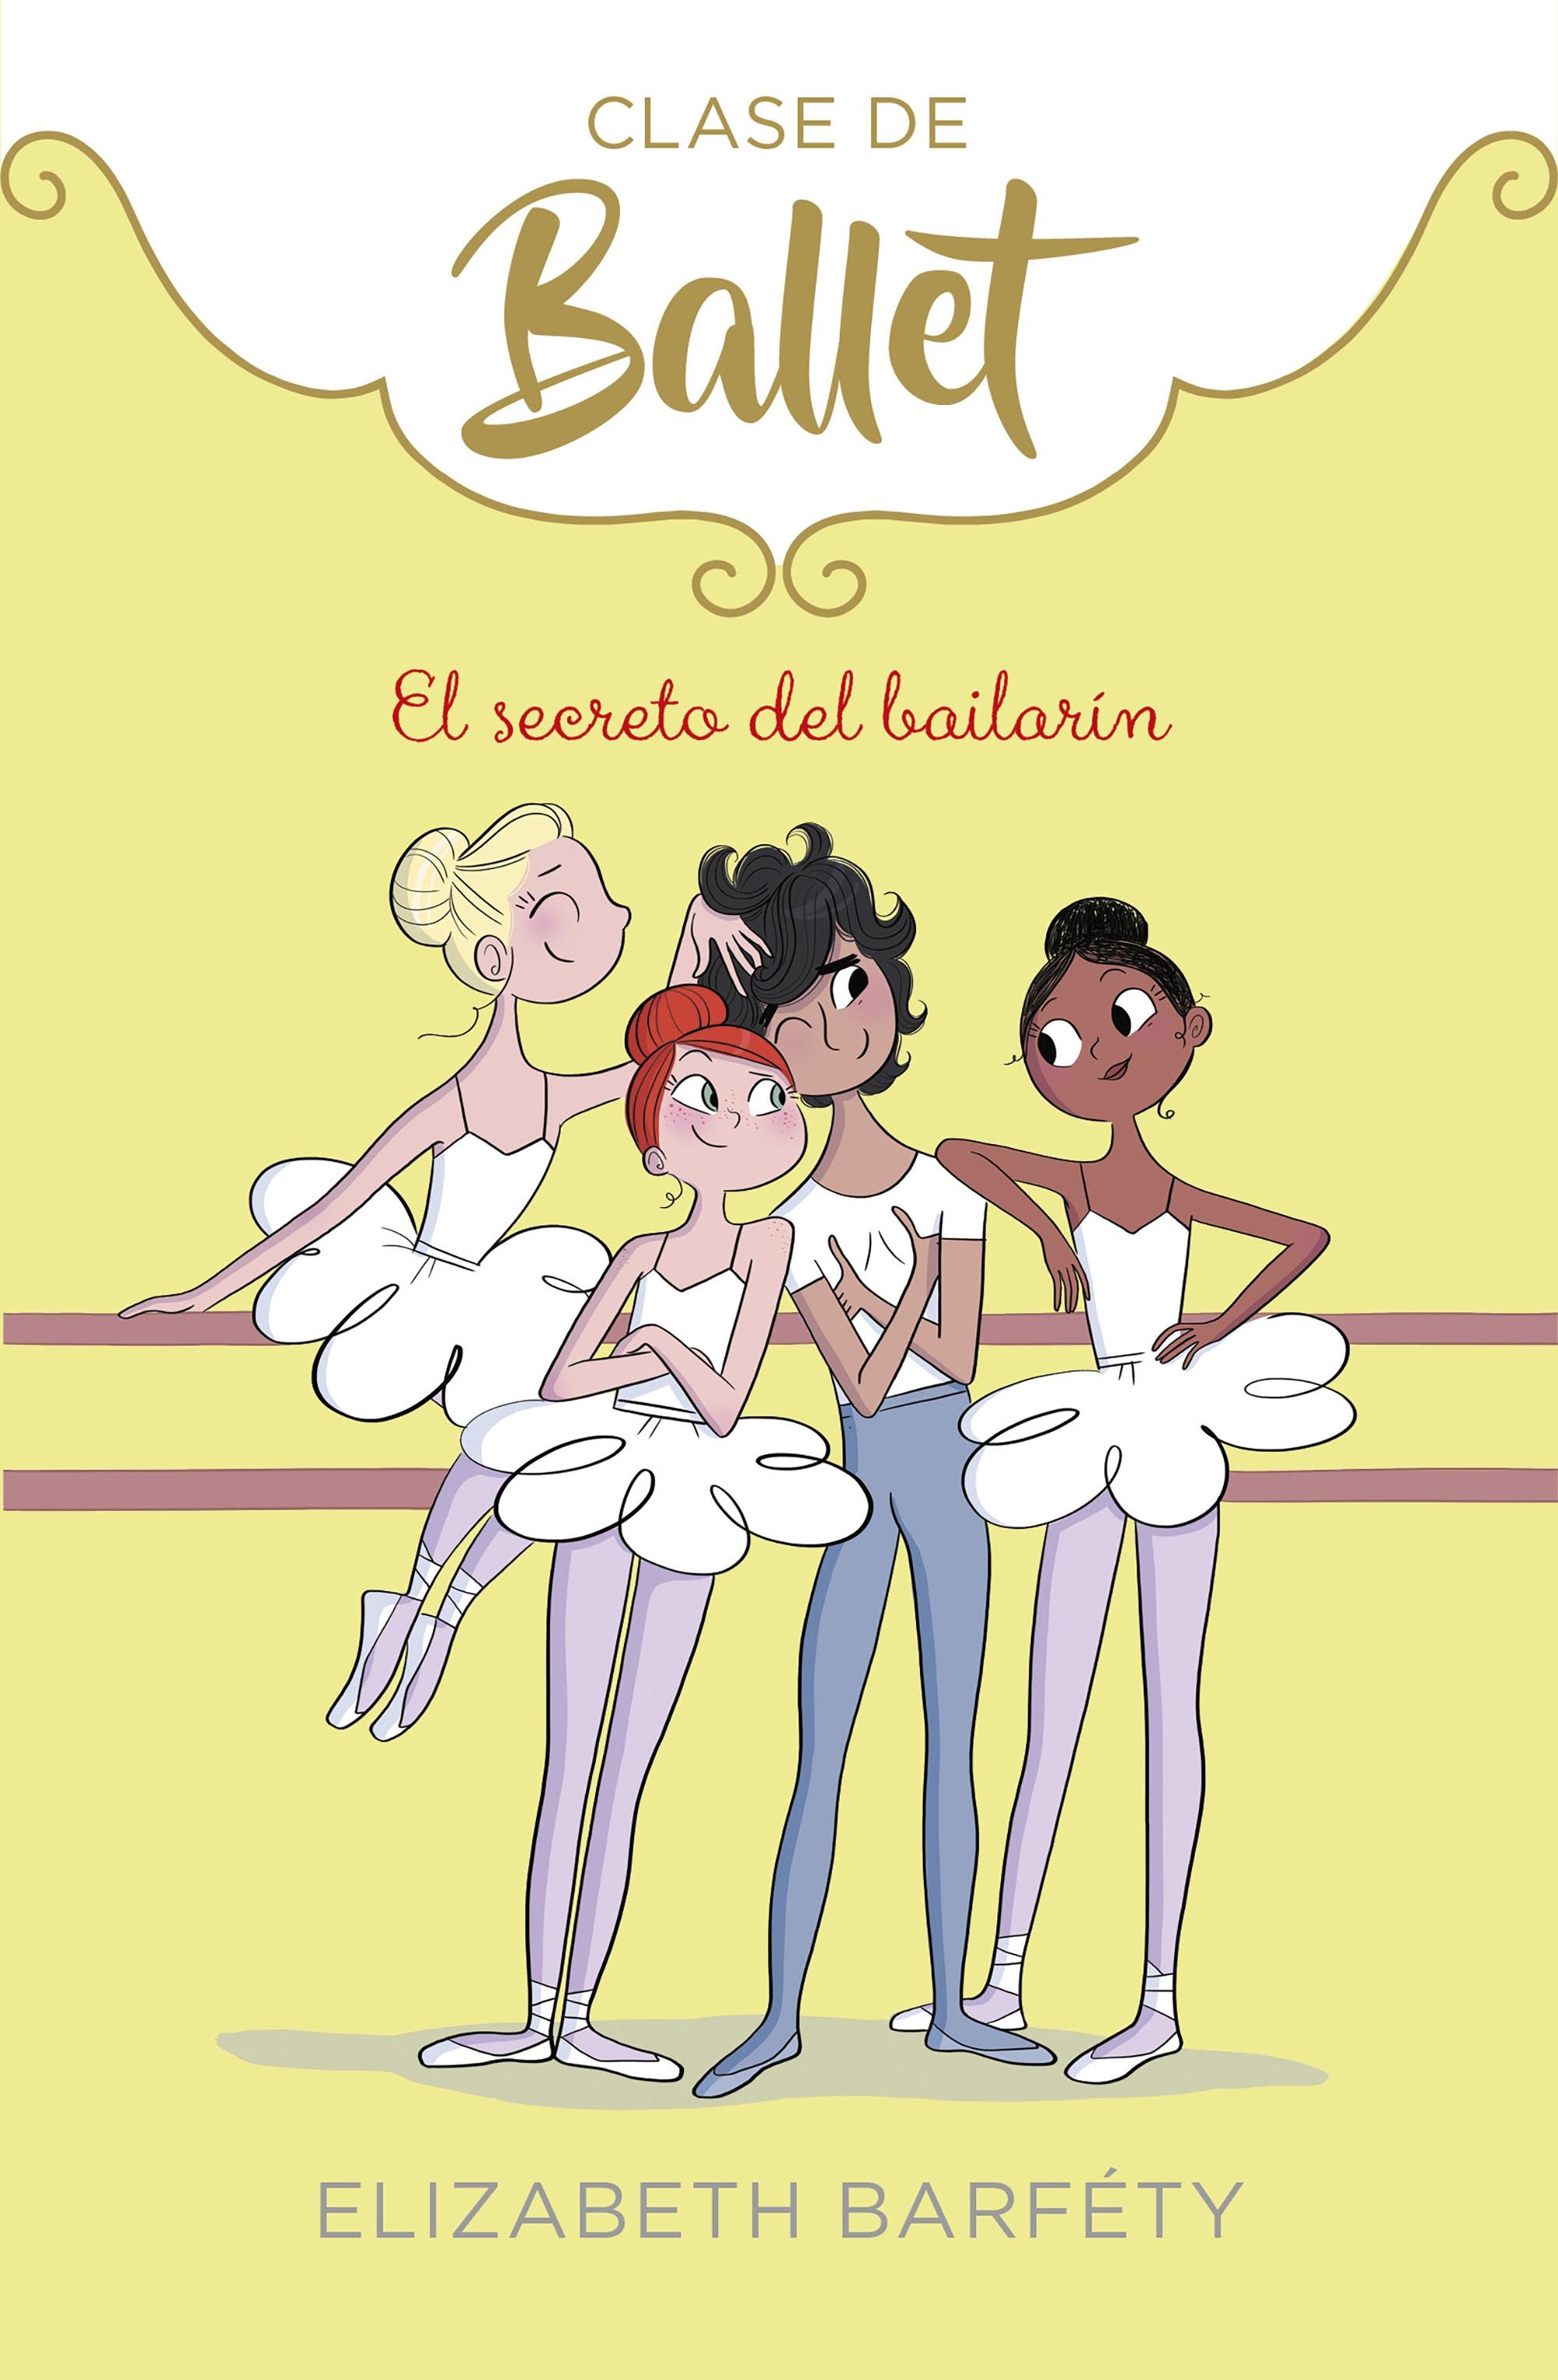 El secreto del bailarín "(Clase de ballet - 6)". 